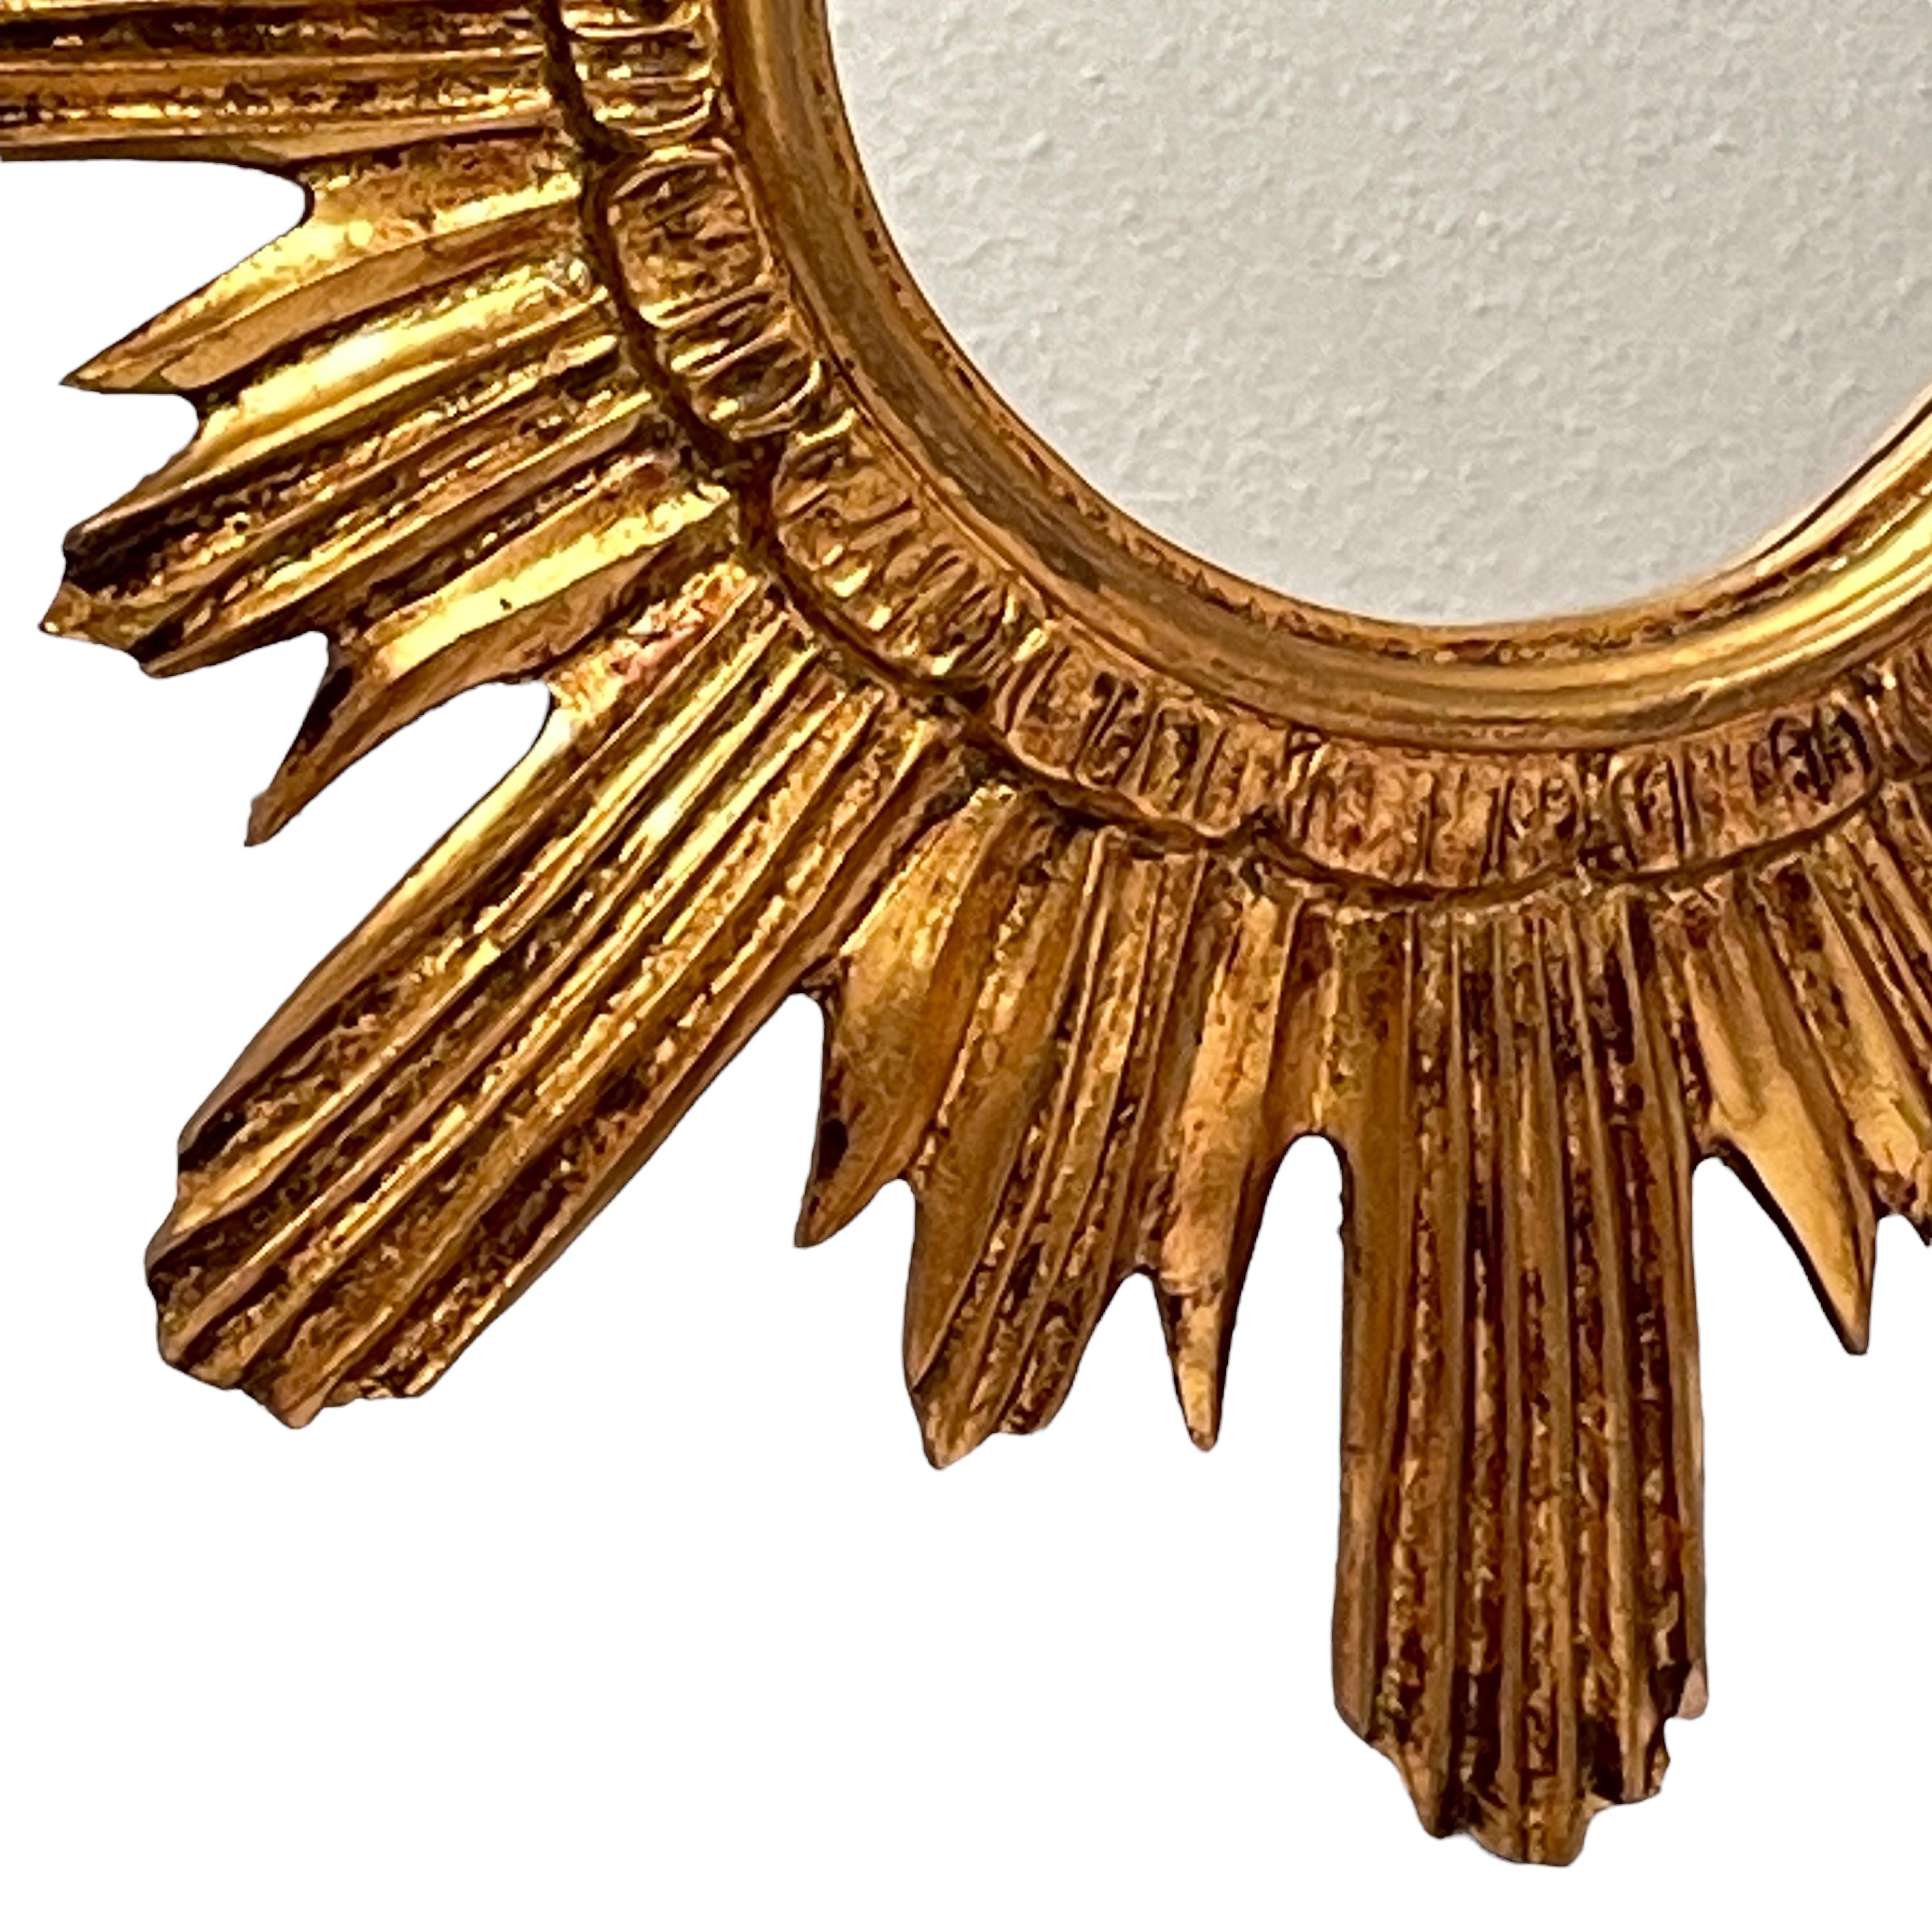 Un magnifique miroir en étoile. Fait de bois doré et de stuc. Aucun éclat, aucune fissure, aucune réparation. Il mesure environ 16,88 pouces de diamètre, le miroir lui-même mesurant environ 5,75 pouces de diamètre. Il se tient à environ 1.5